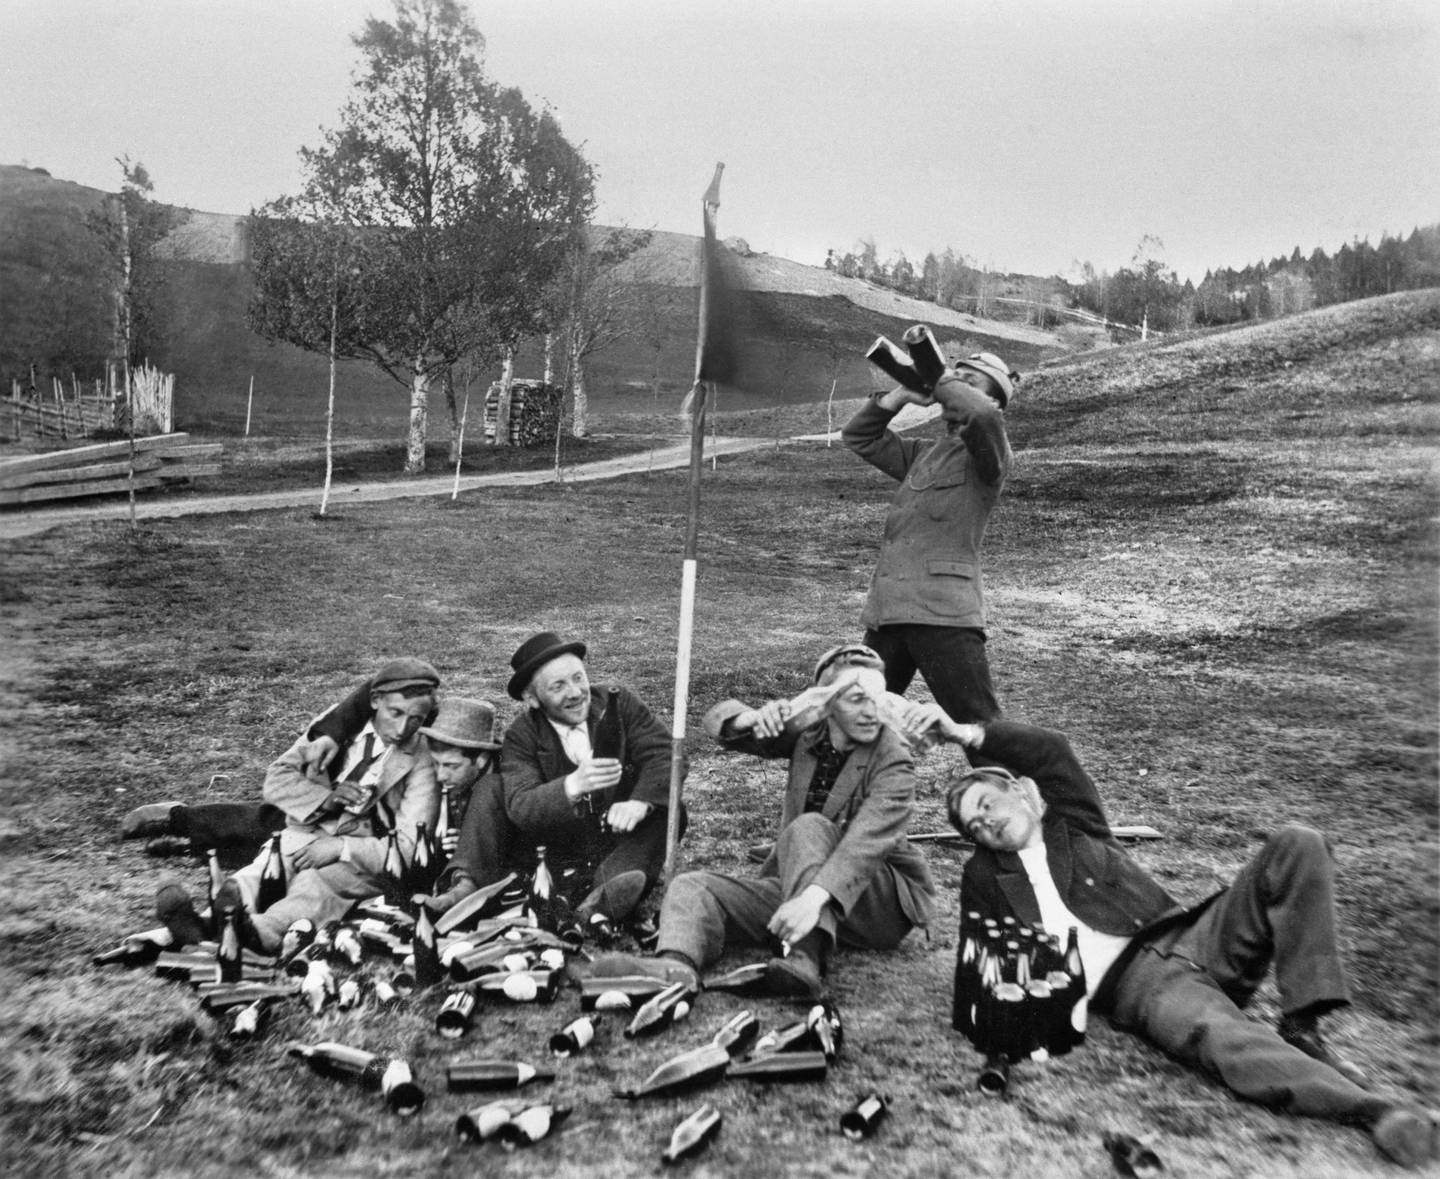 Sterke sosialpolitiske krefter kjempet for totalavhold, og i årene 1916-1926 var det brennevinsforbud i Norge. Bildet viser et drikkelag fra 1897.